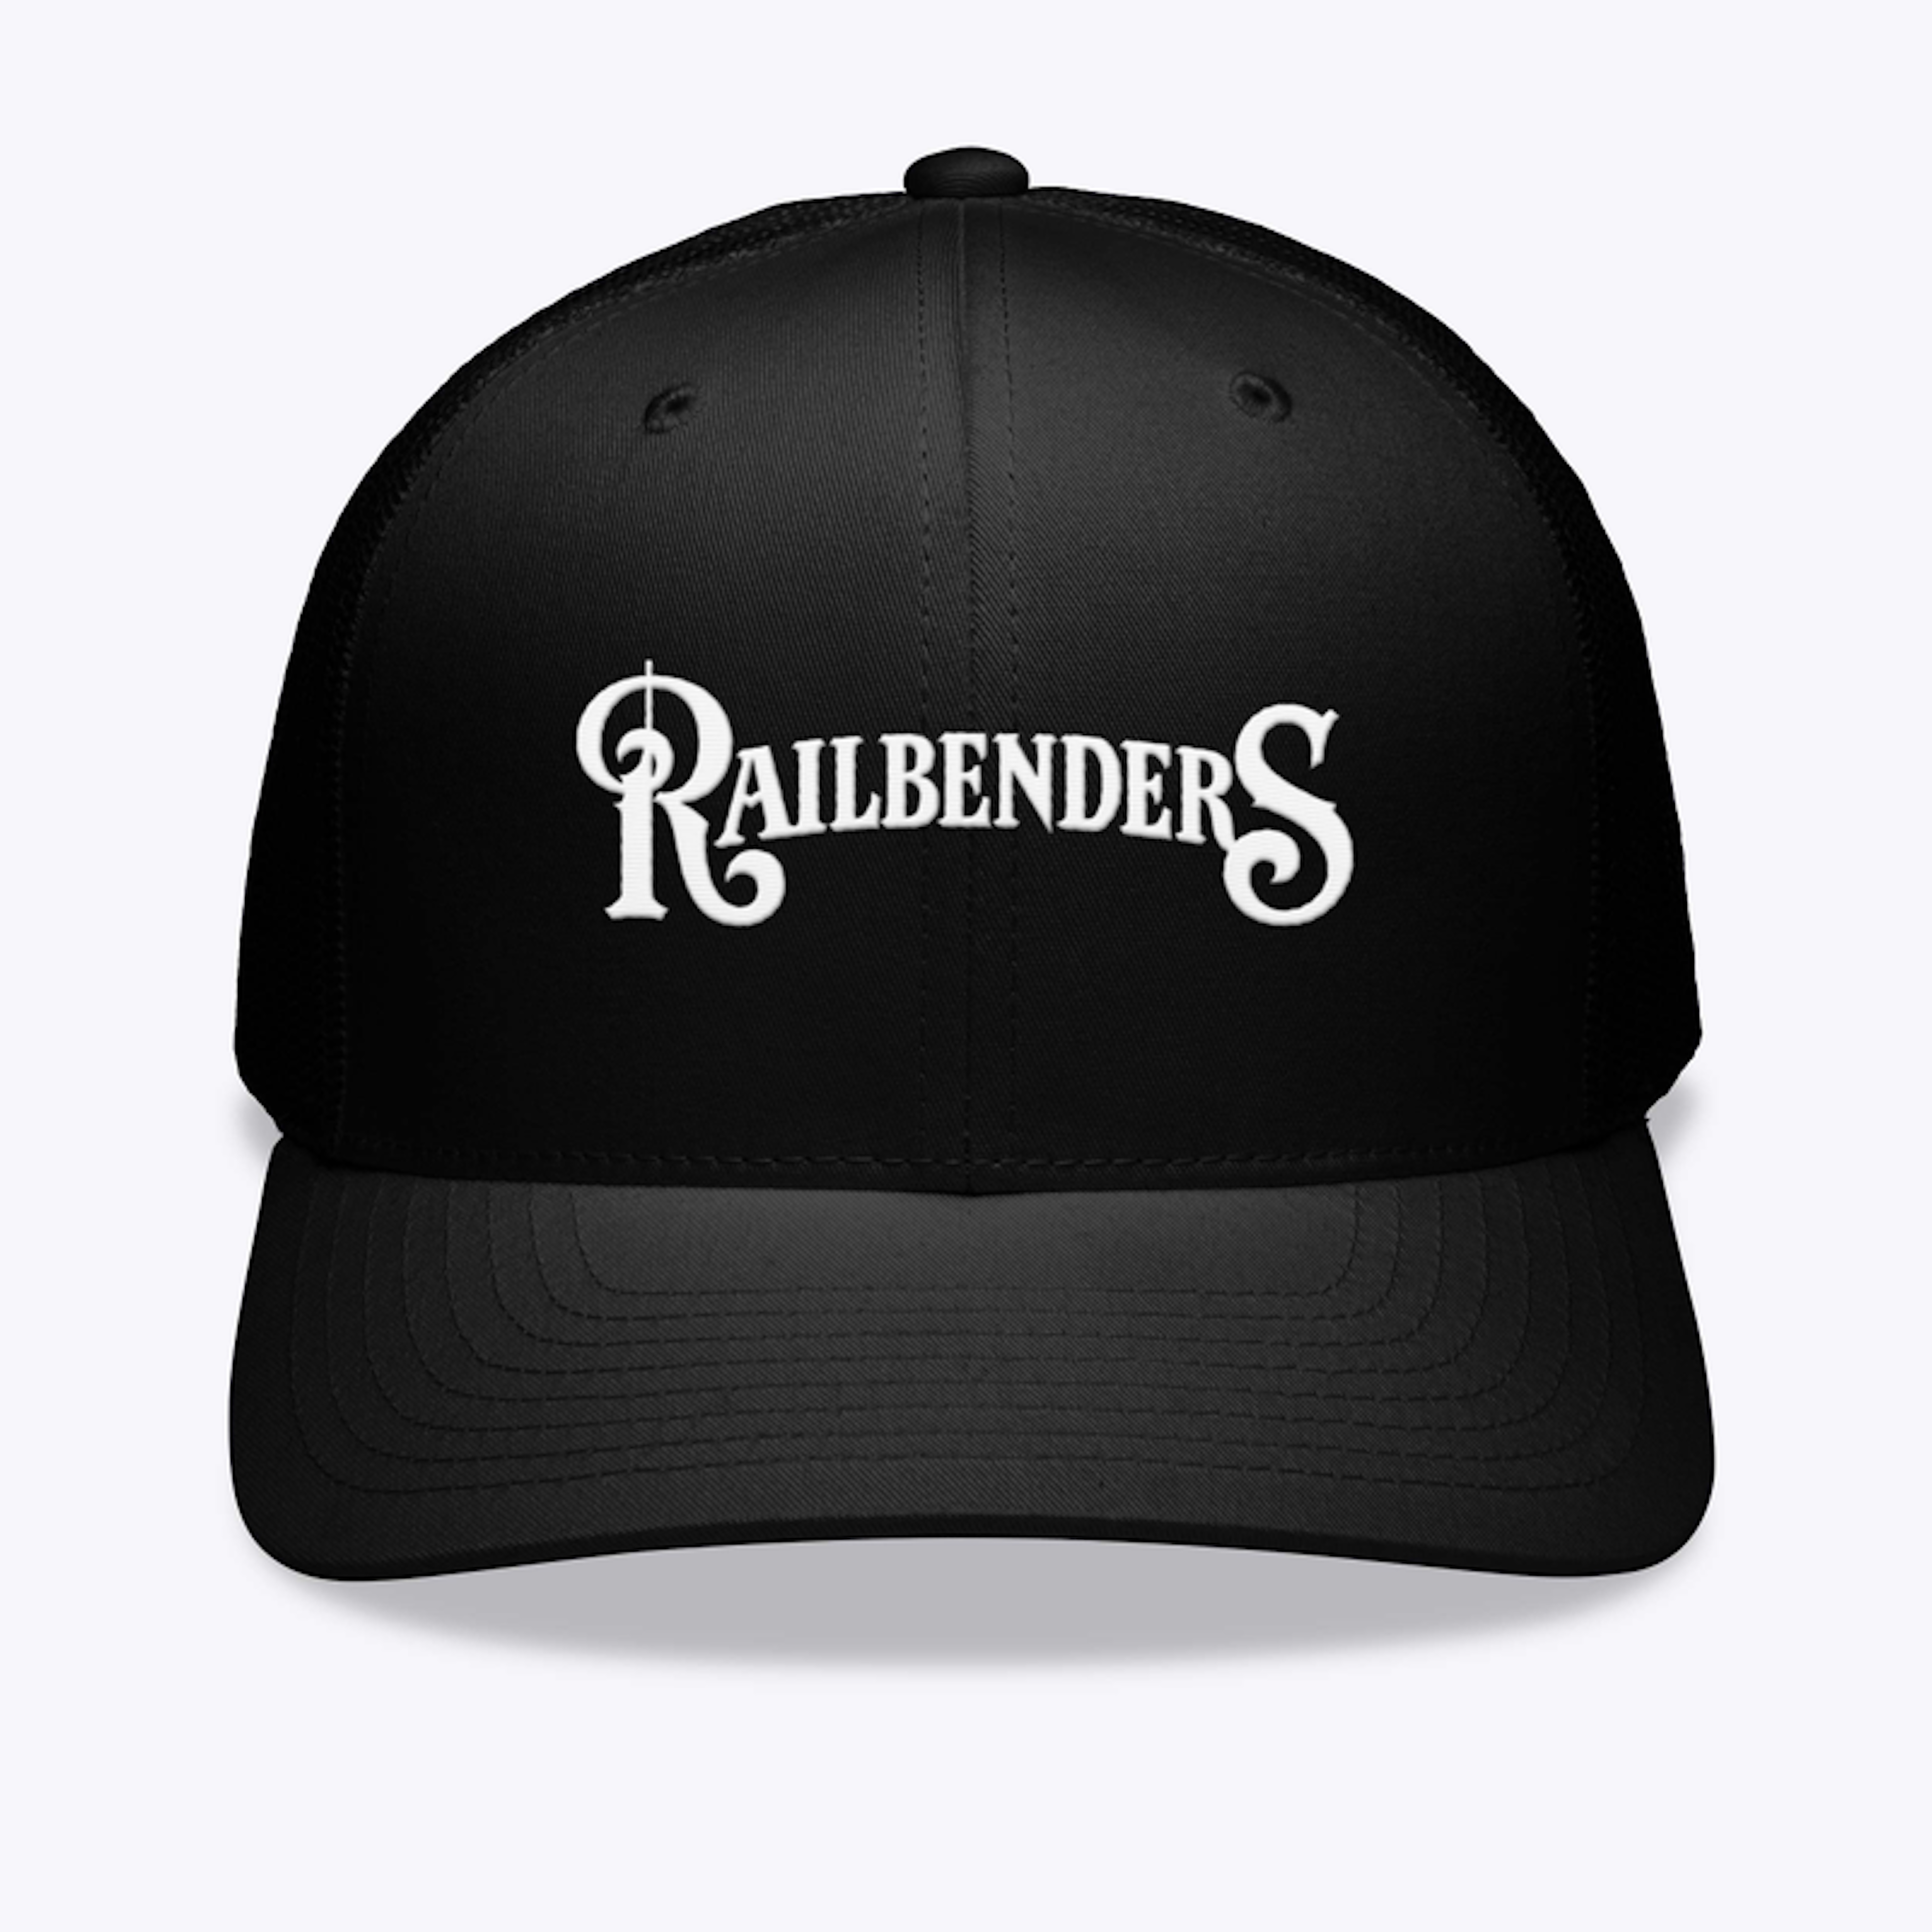  Railbenders Hats